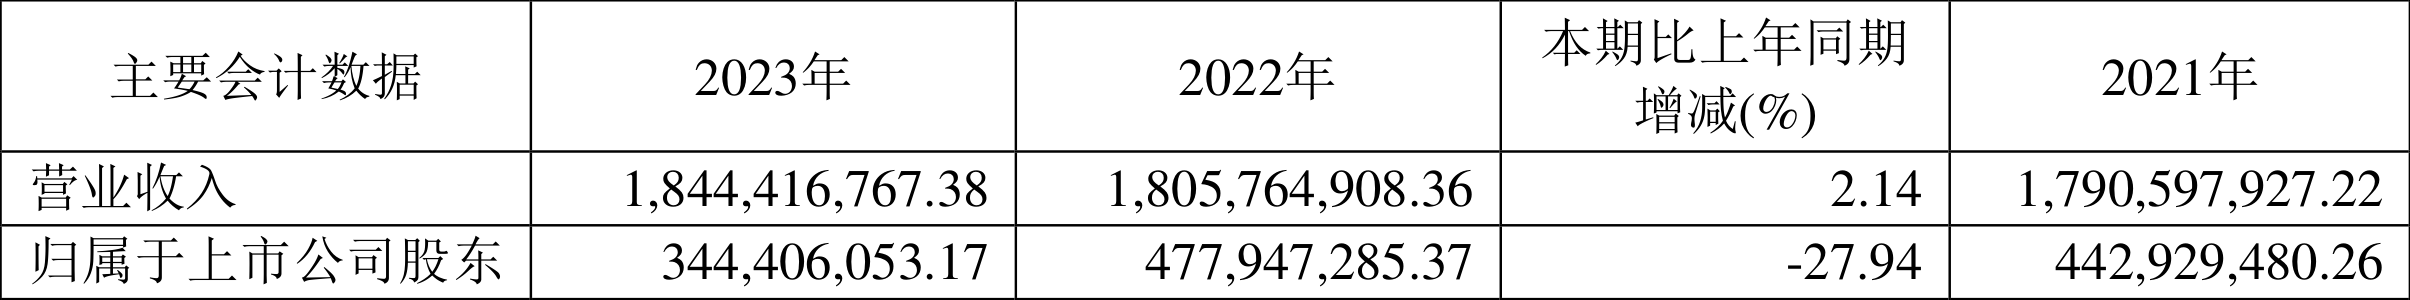 龙版传媒：2023年净利润同比下降27.94% 拟10派0.8元